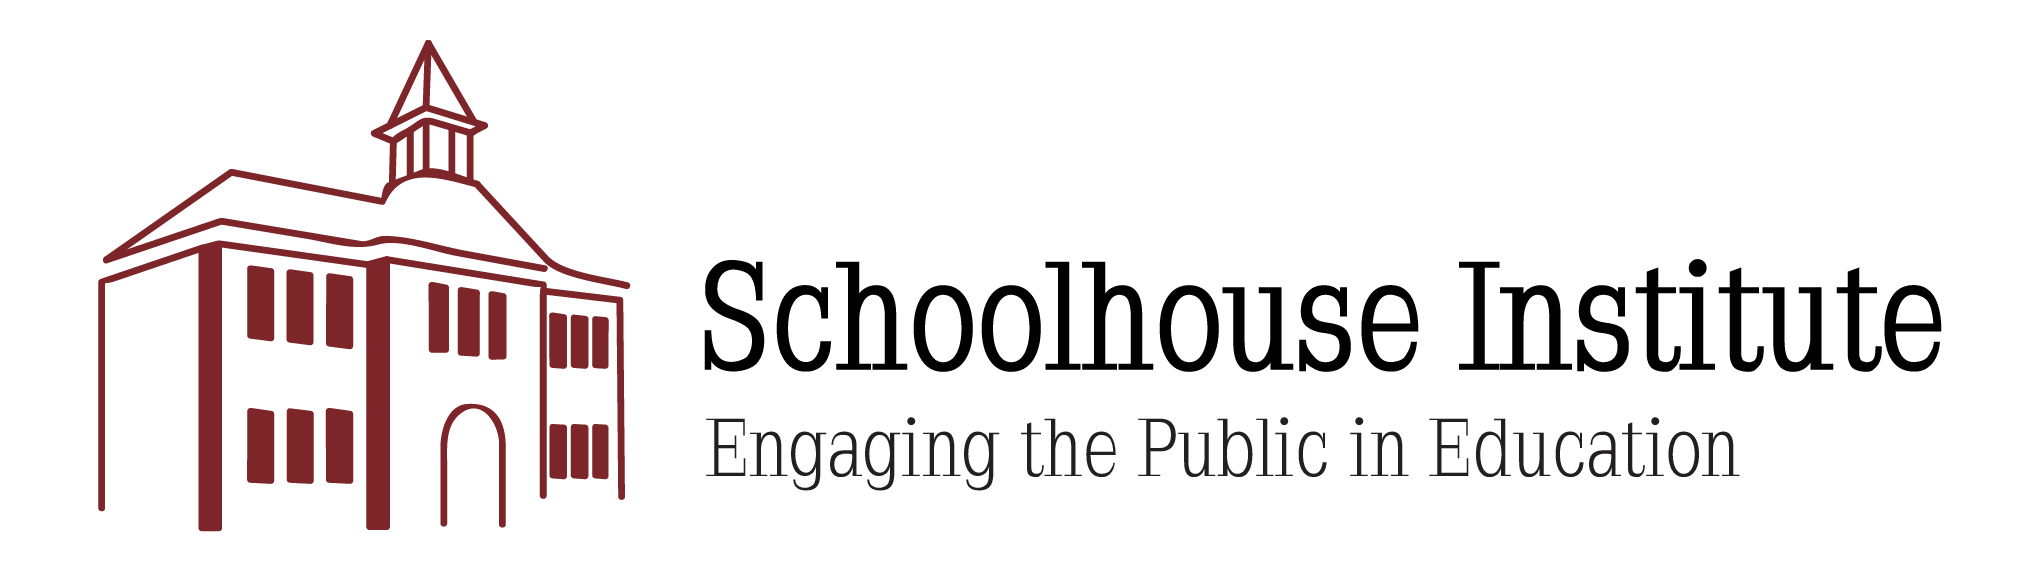 Schoolhouse Institute